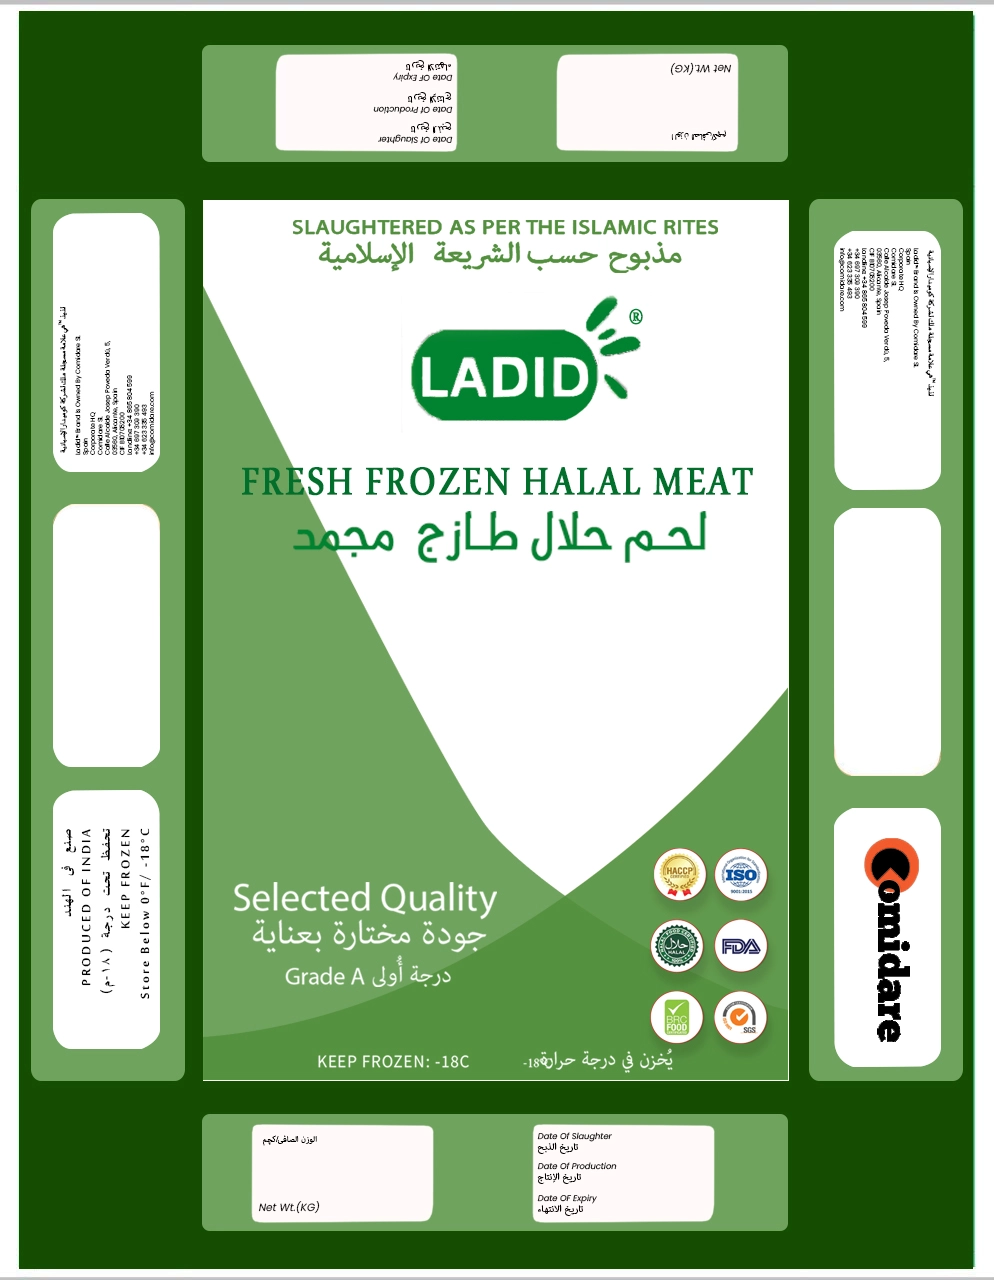 Ladid-Design